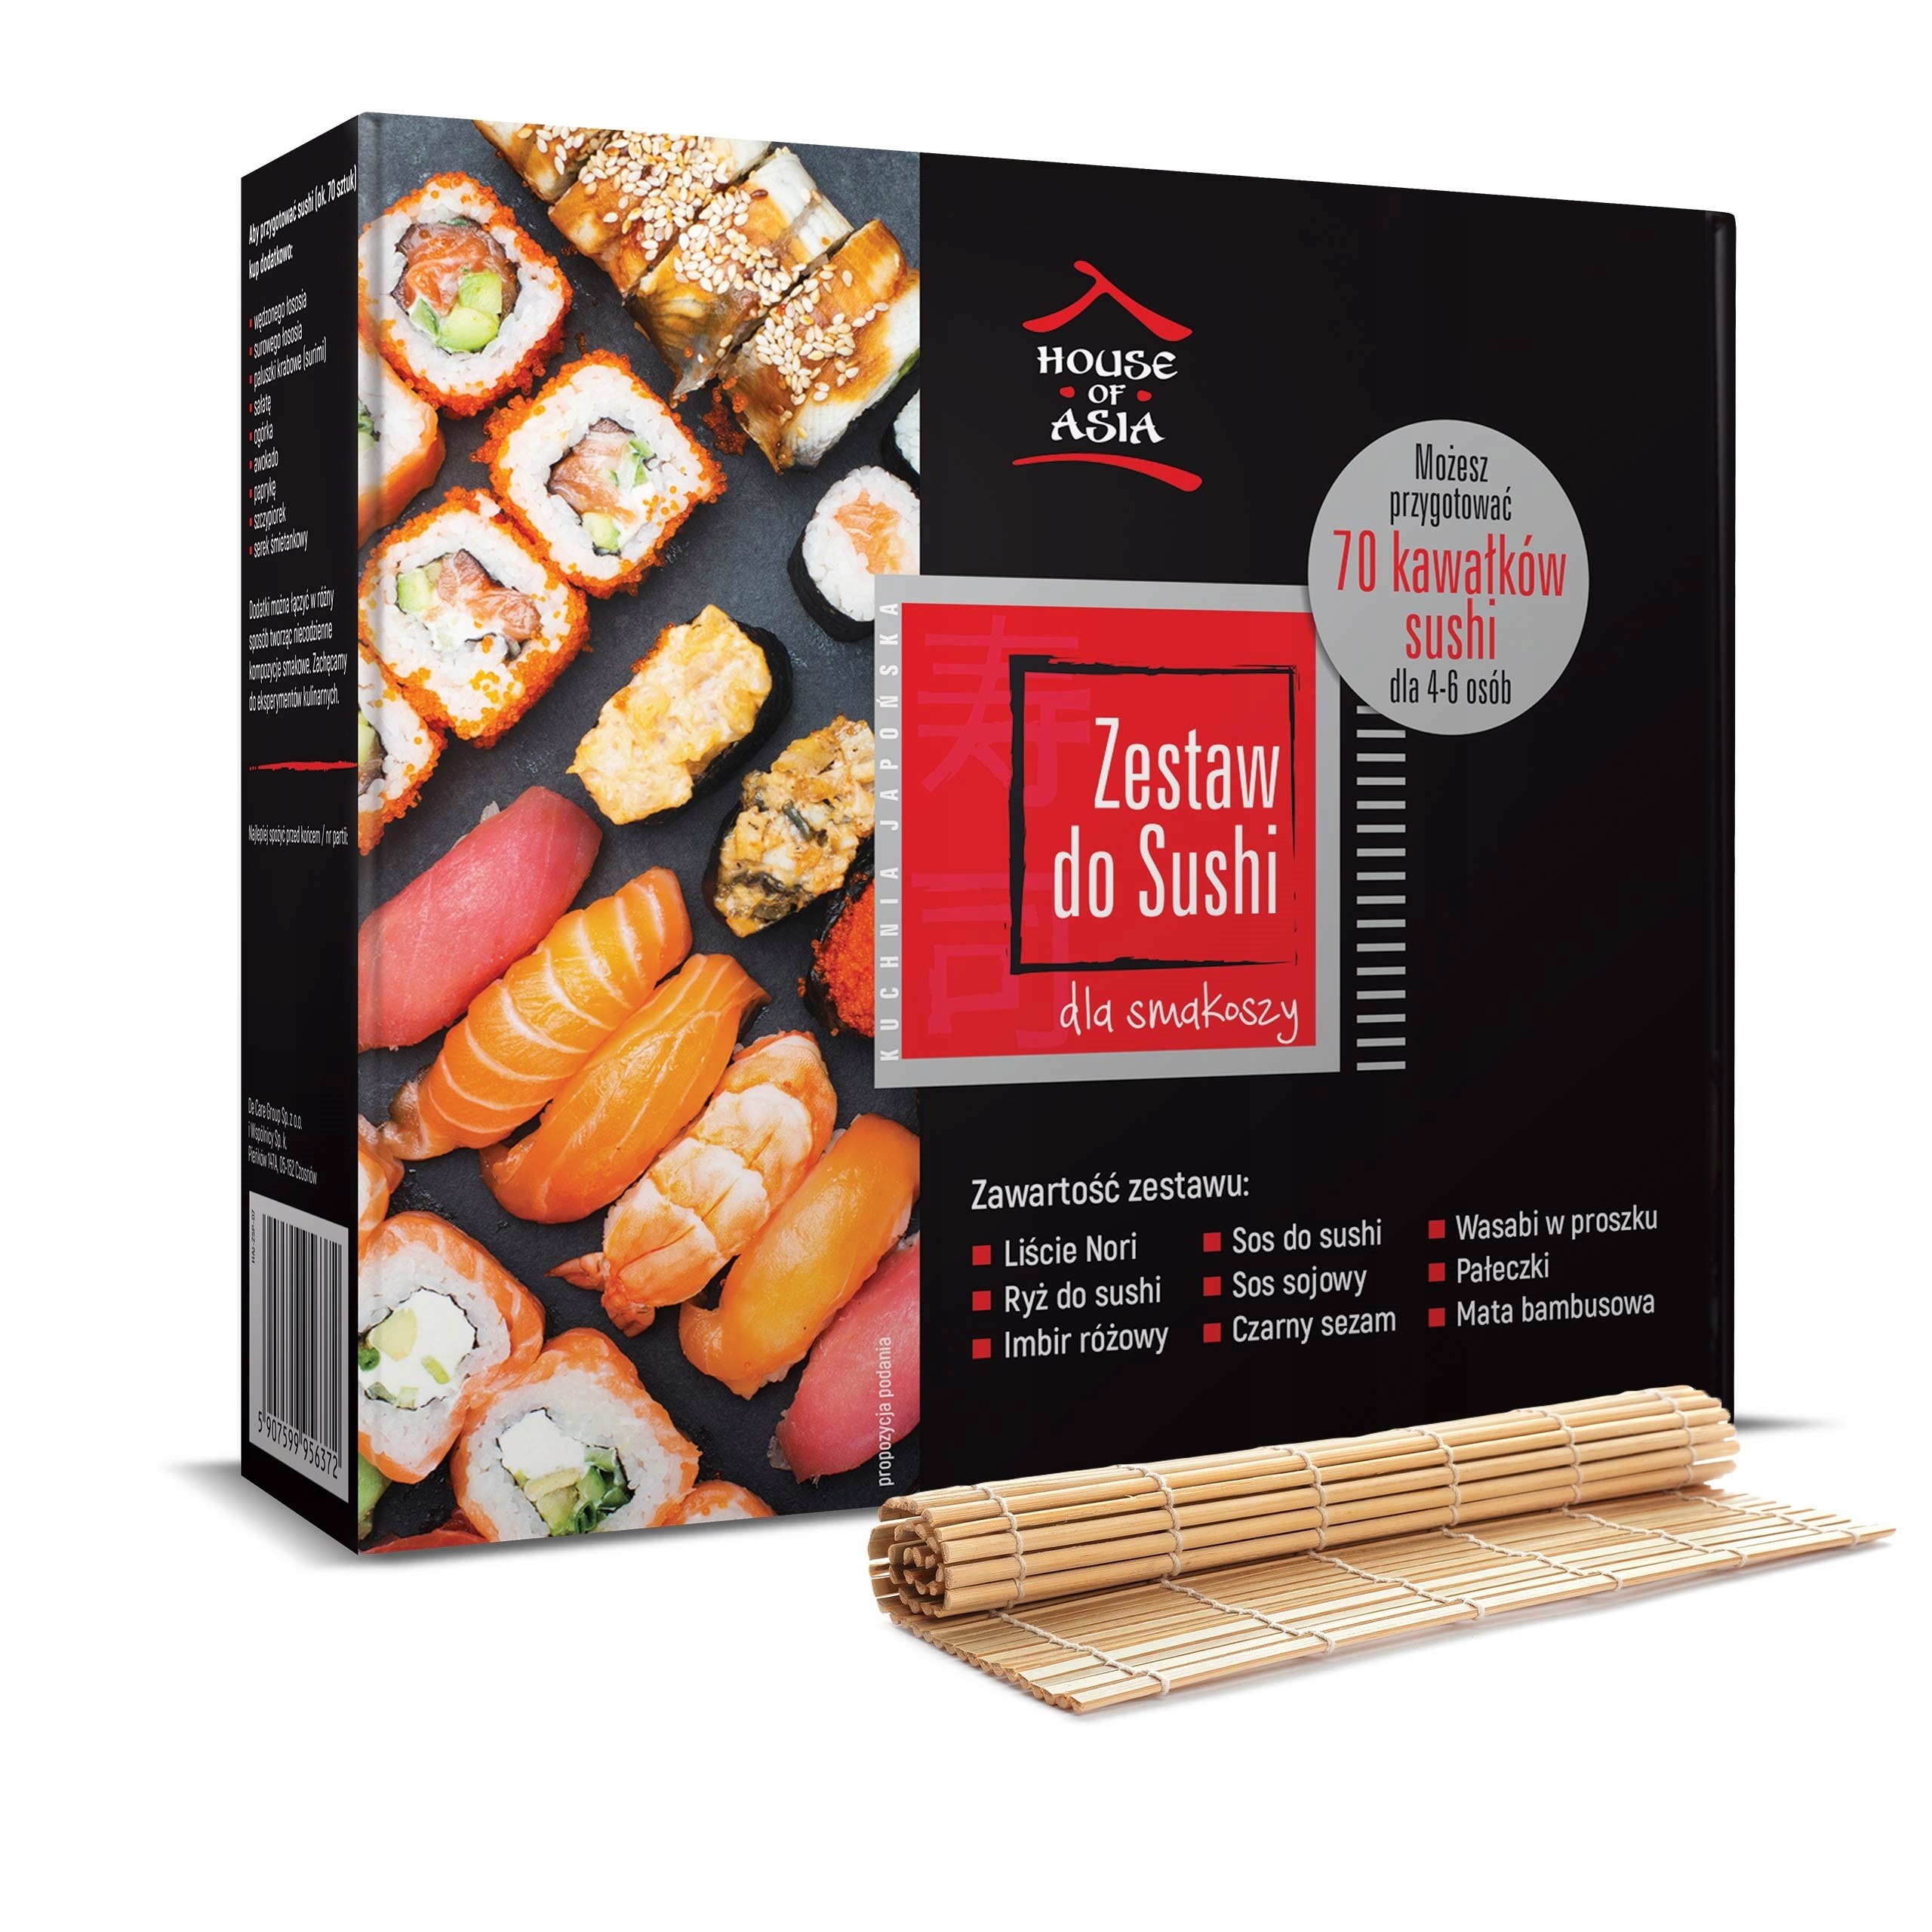 Zestaw do sushi Premium dla 4-6 osób 1.1 kg